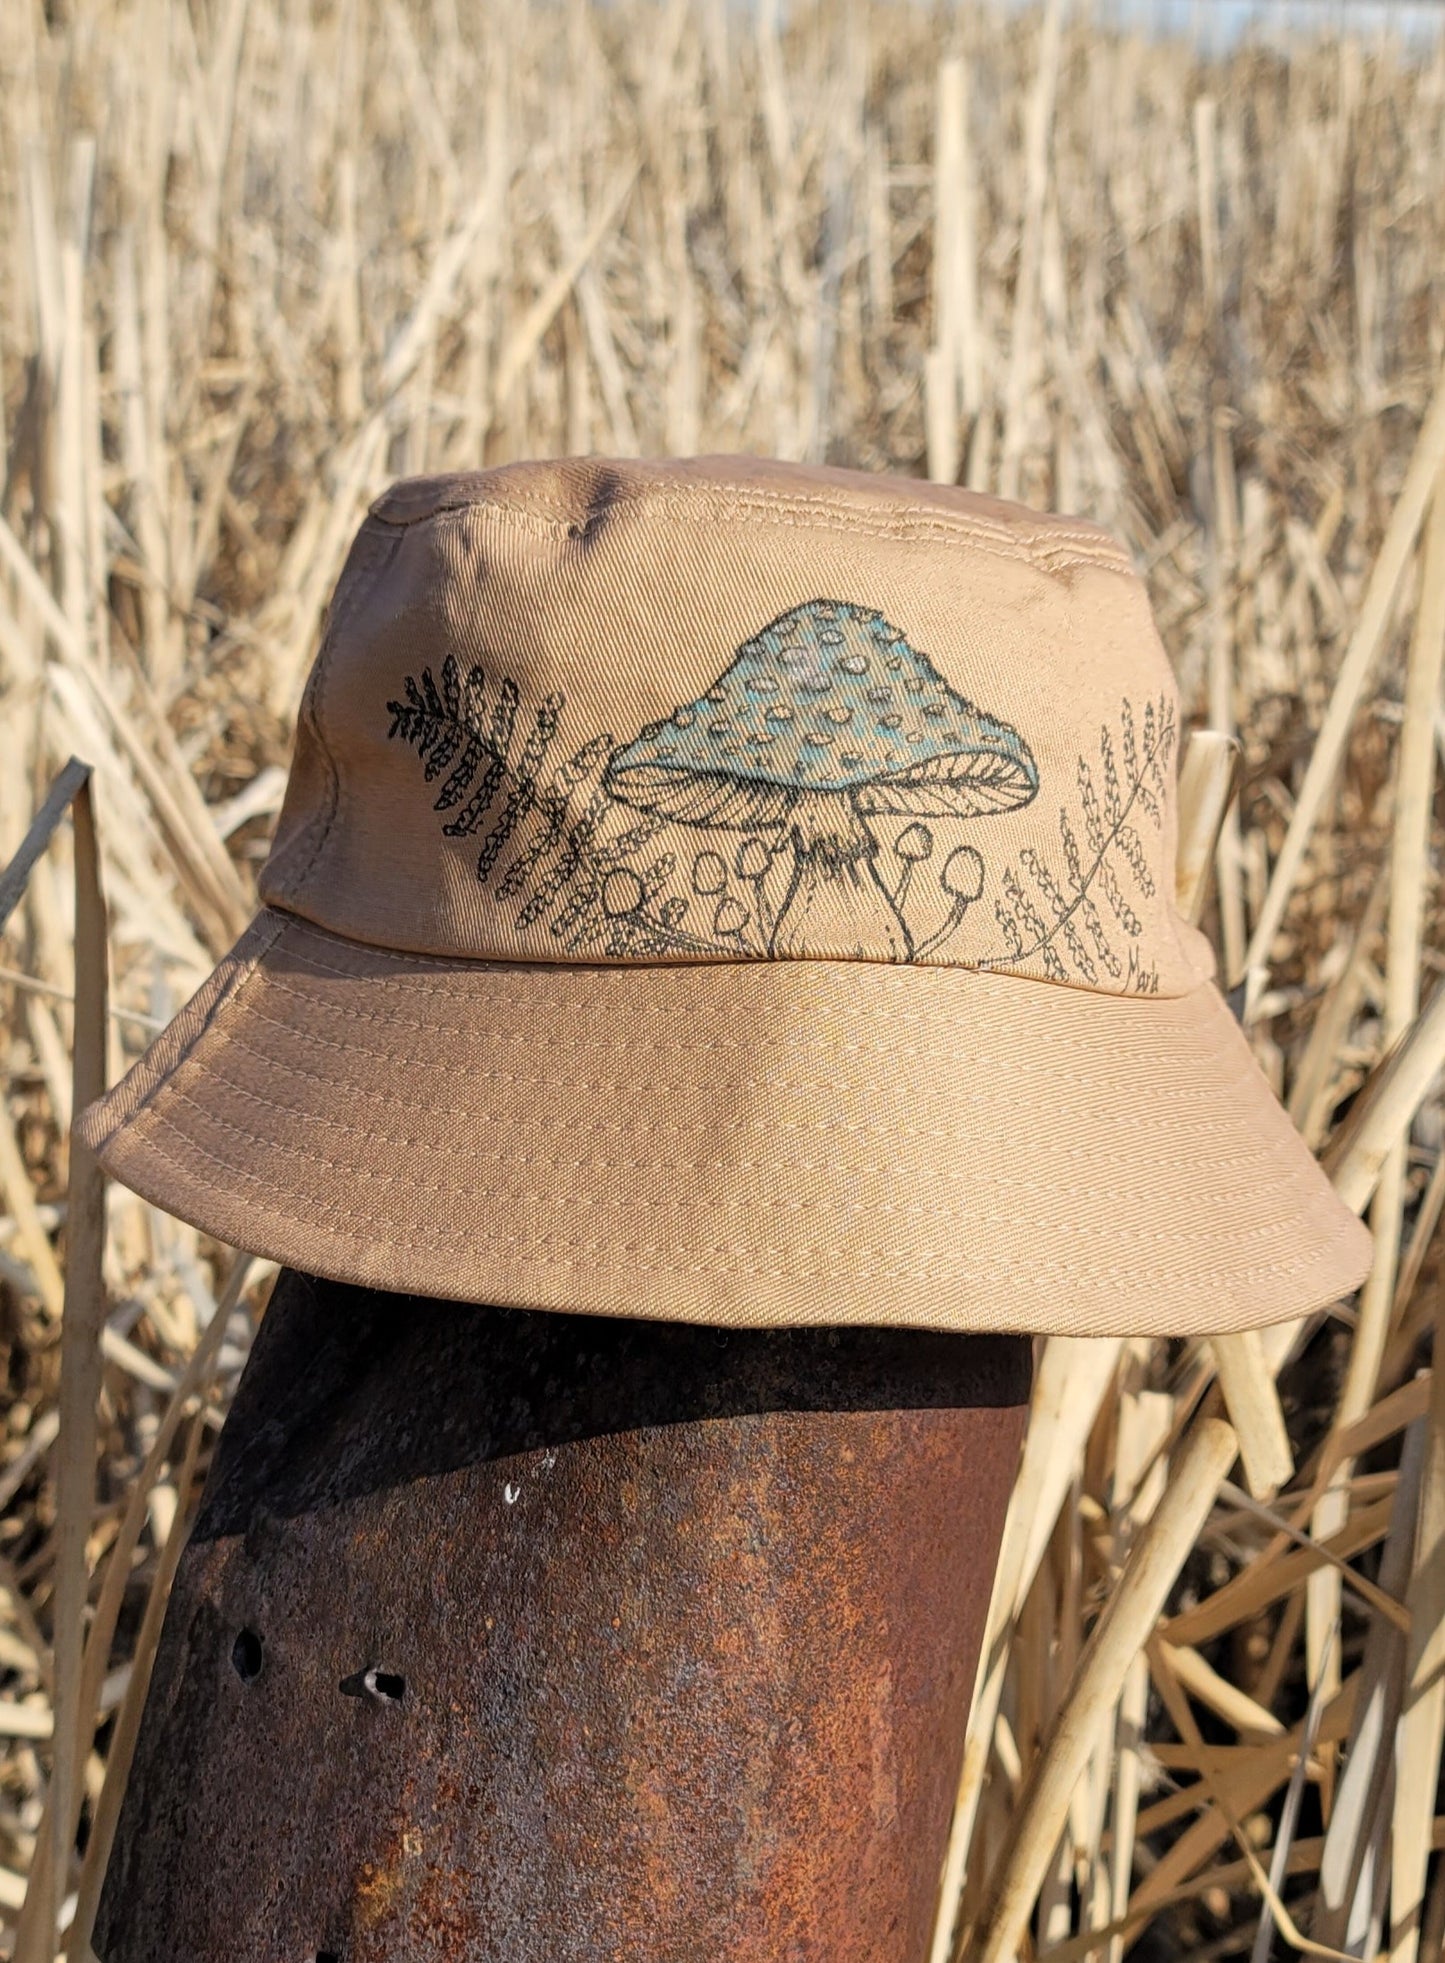 Toad sitting on mushroom Bucket Hat